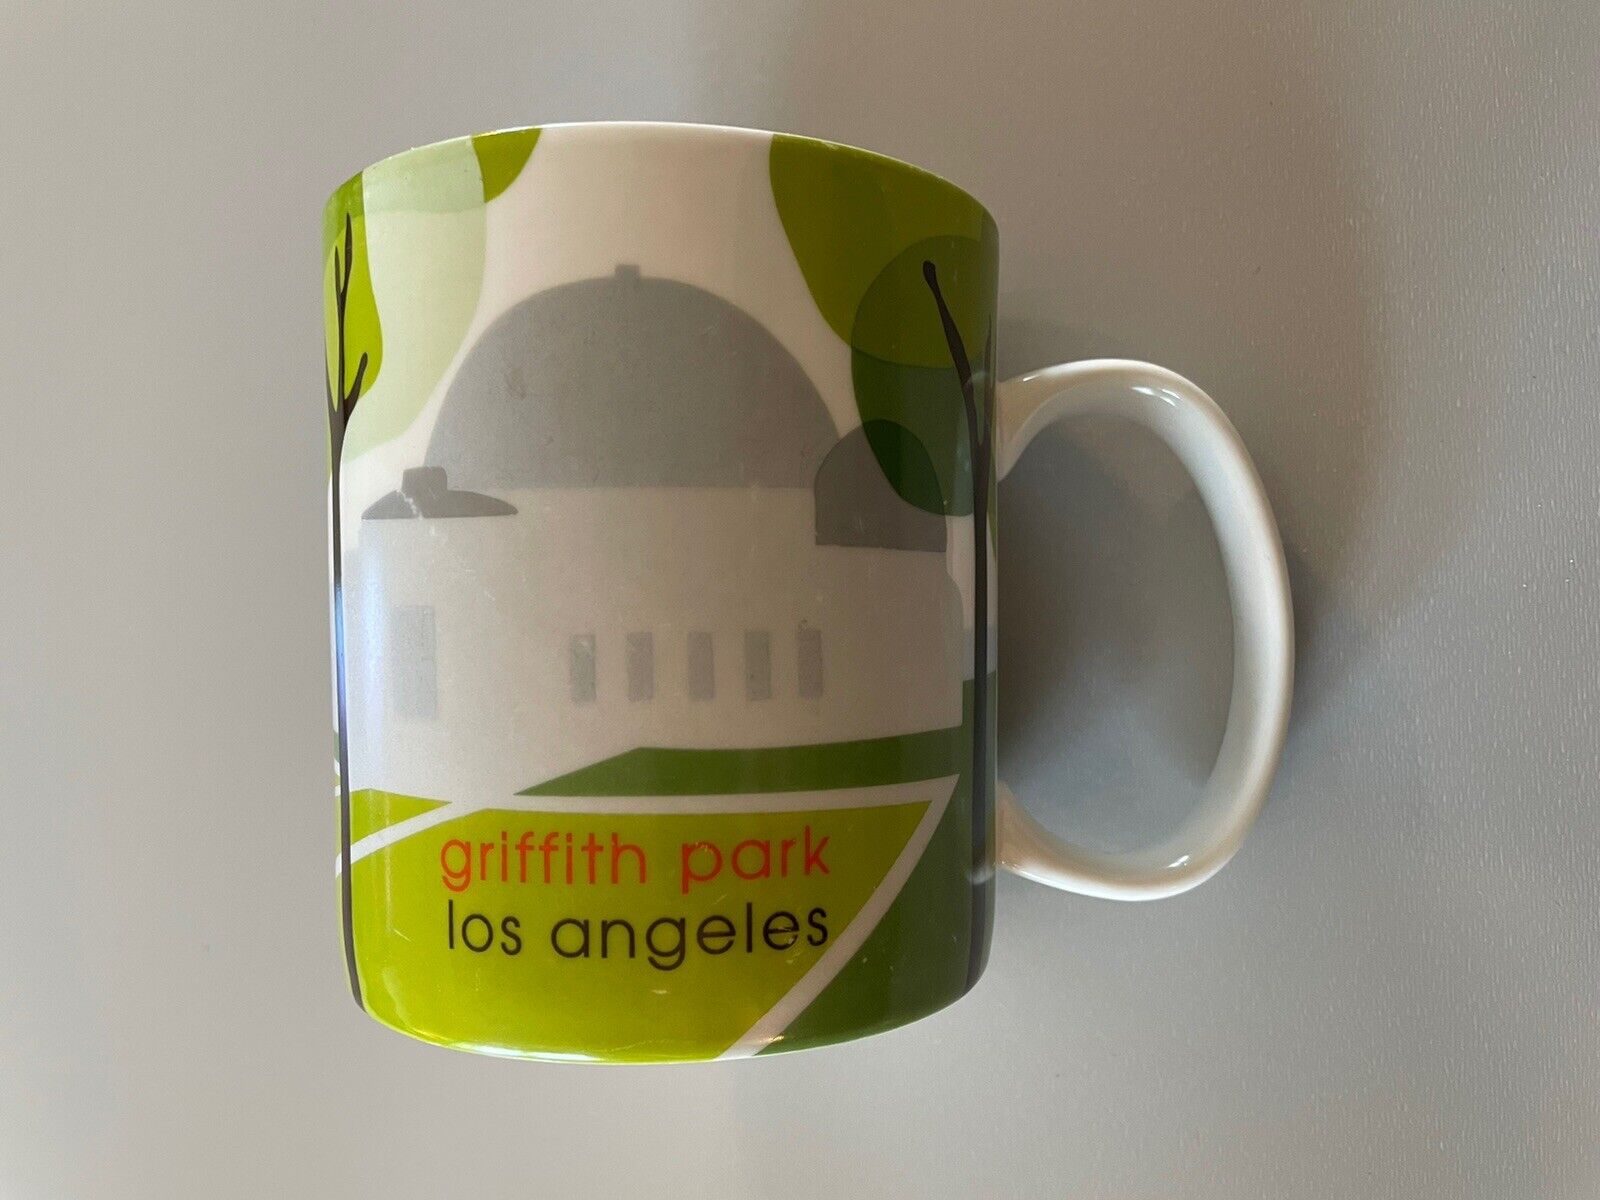 Starbucks Coffee Griffith Park Observatory Los Angeles 2007 Mug